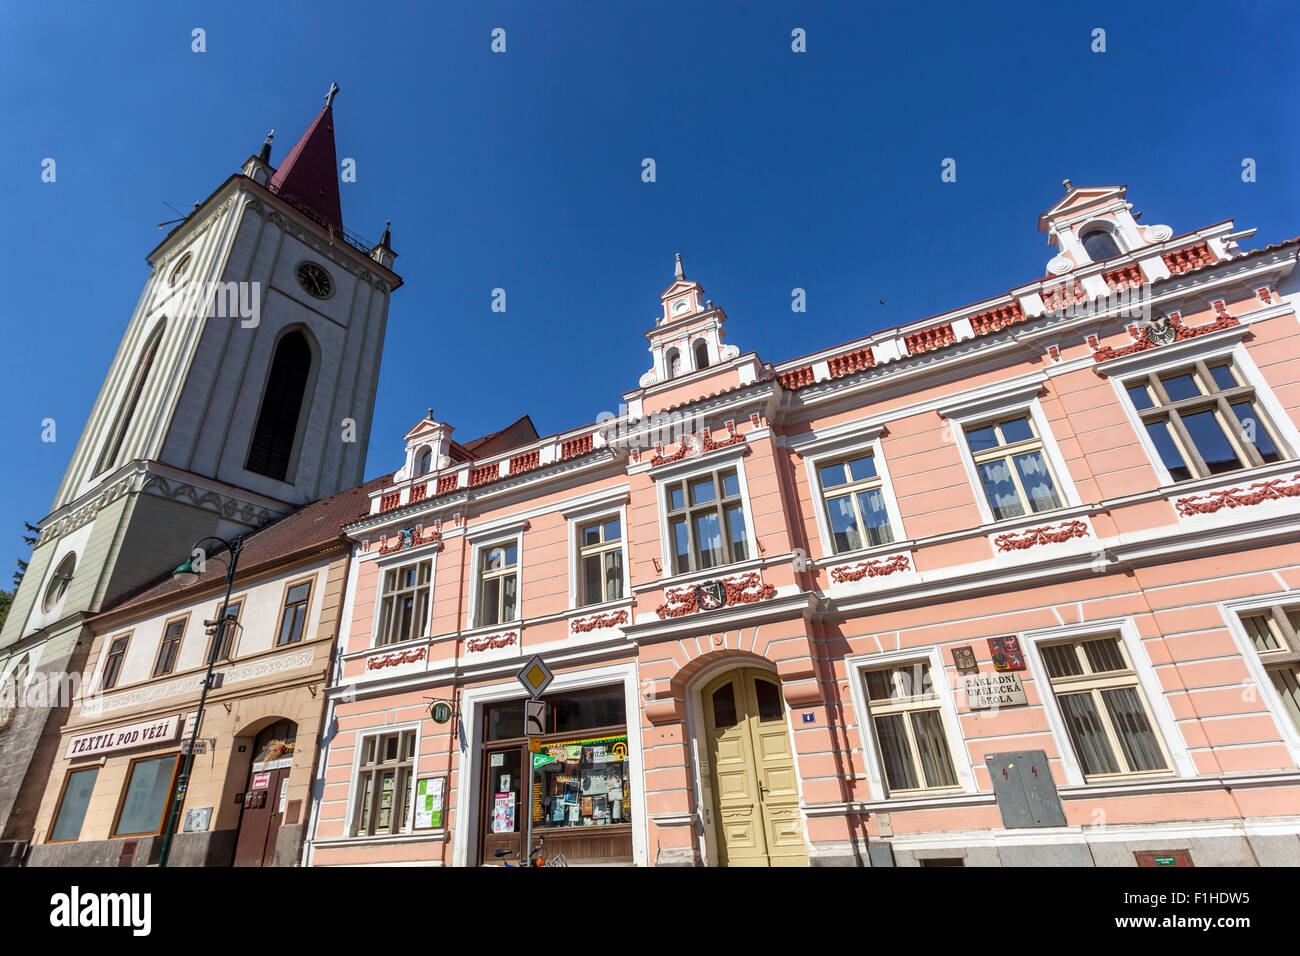 La torre de la campana y una puerta barroca, Blatna, al sur de Bohemia, República Checa, Europa Foto de stock